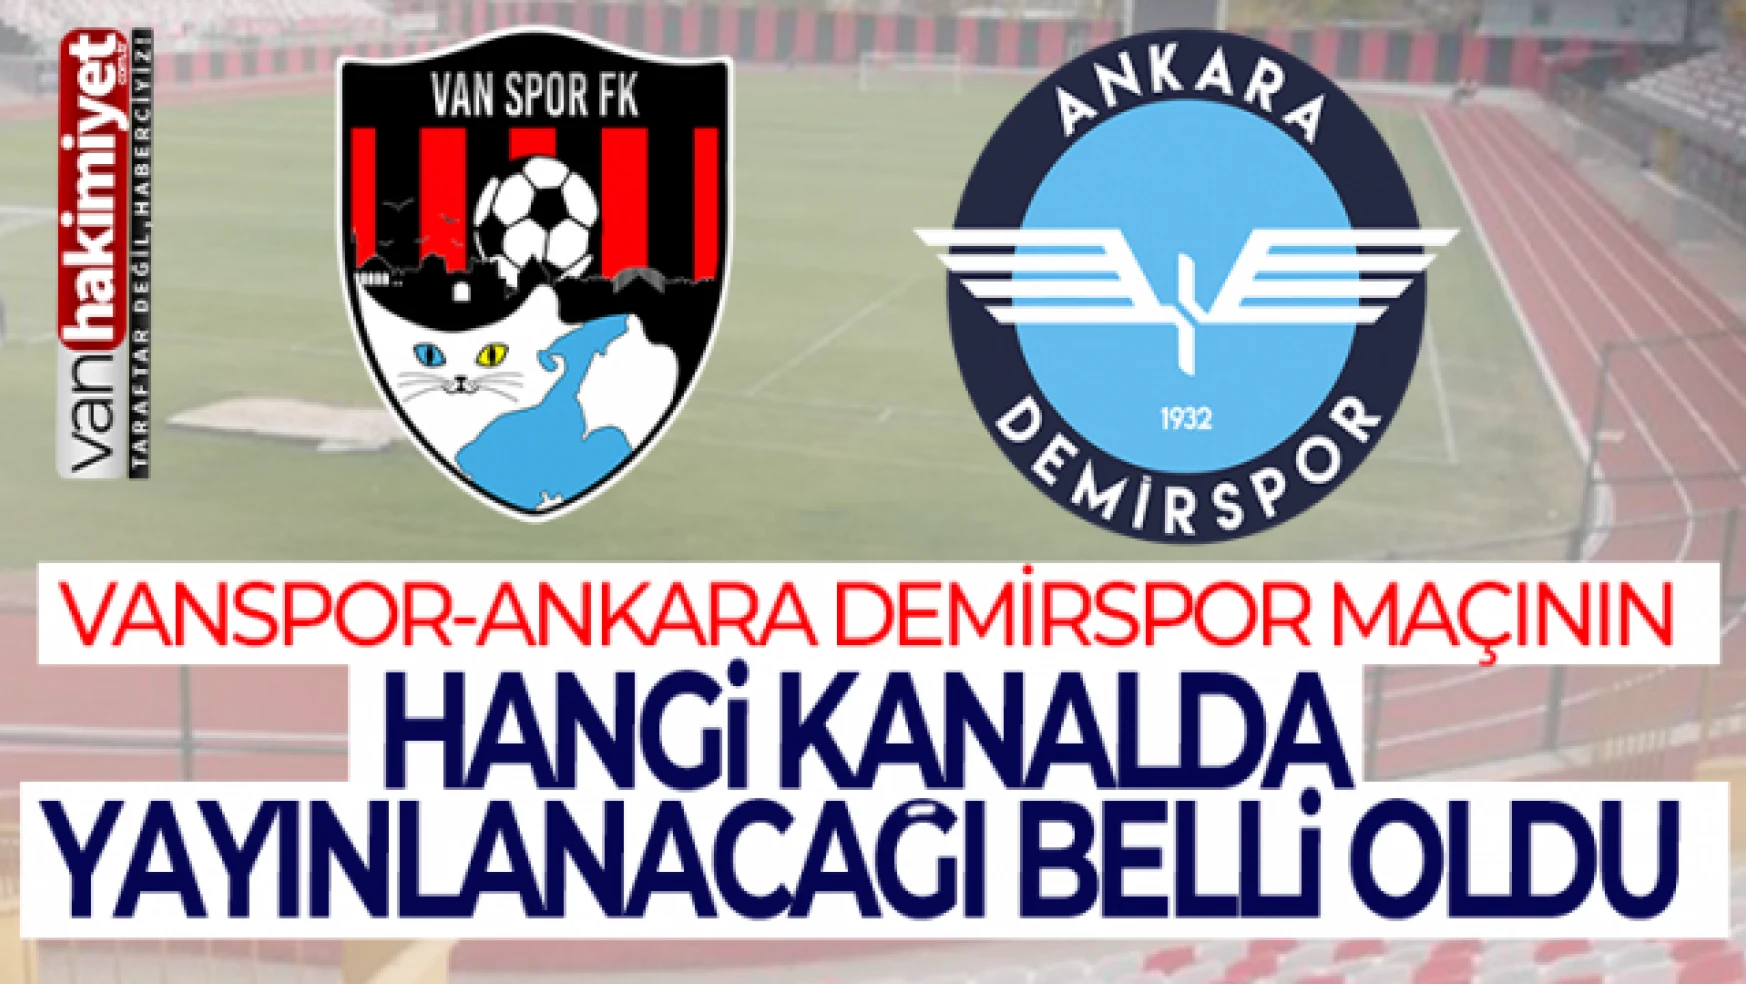 Vanspor - Ankara Demirspor maçı hangi kanalda? Canlı izle